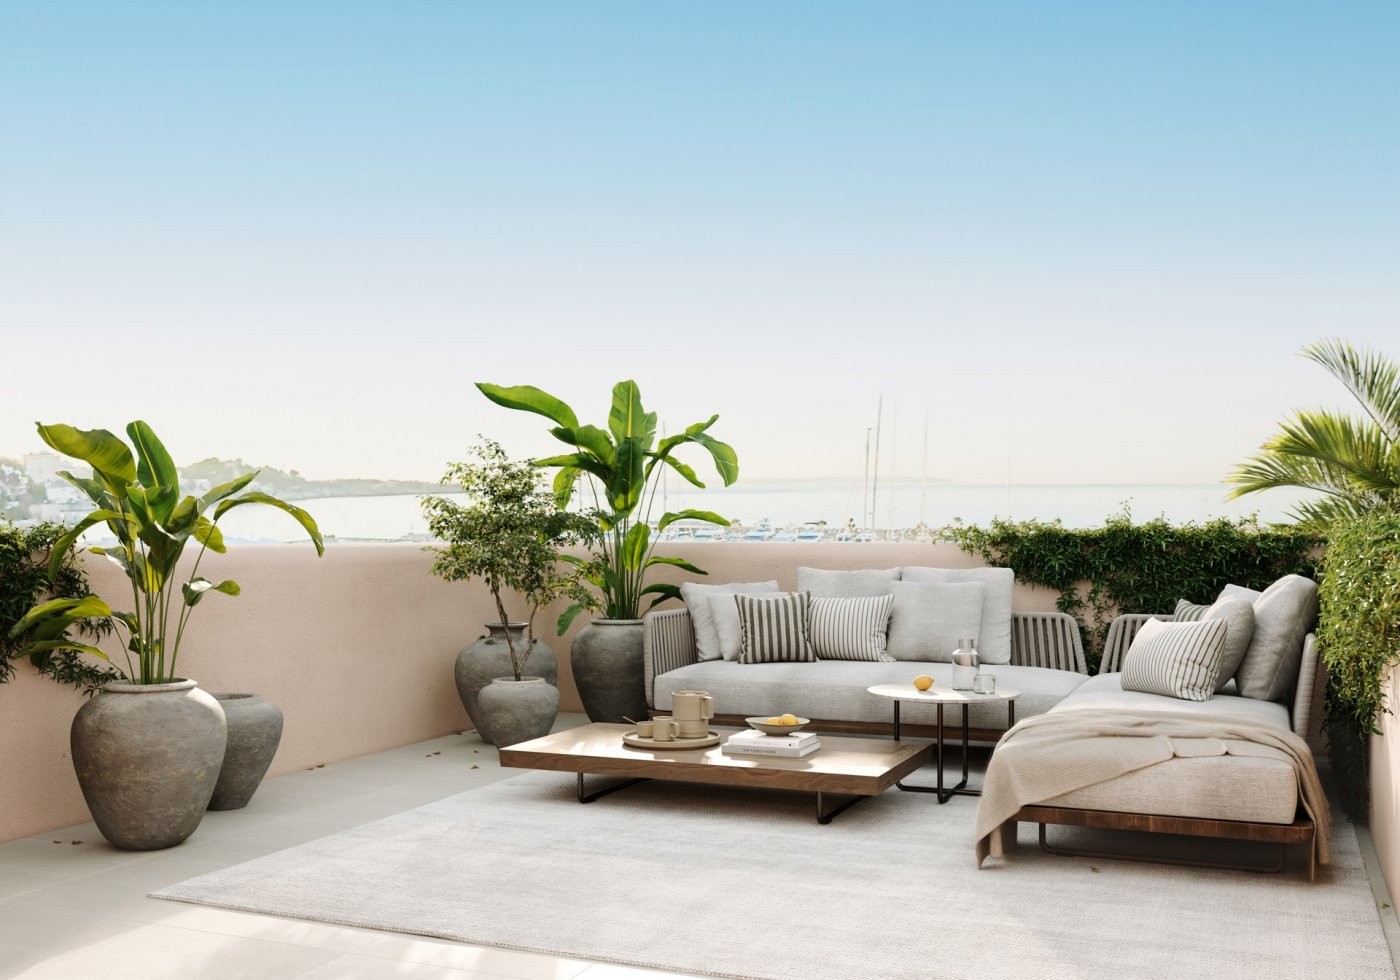 Moderno dúplex de obra nueva orientado al sur con jardín, piscina y solárium con vistas al mar.